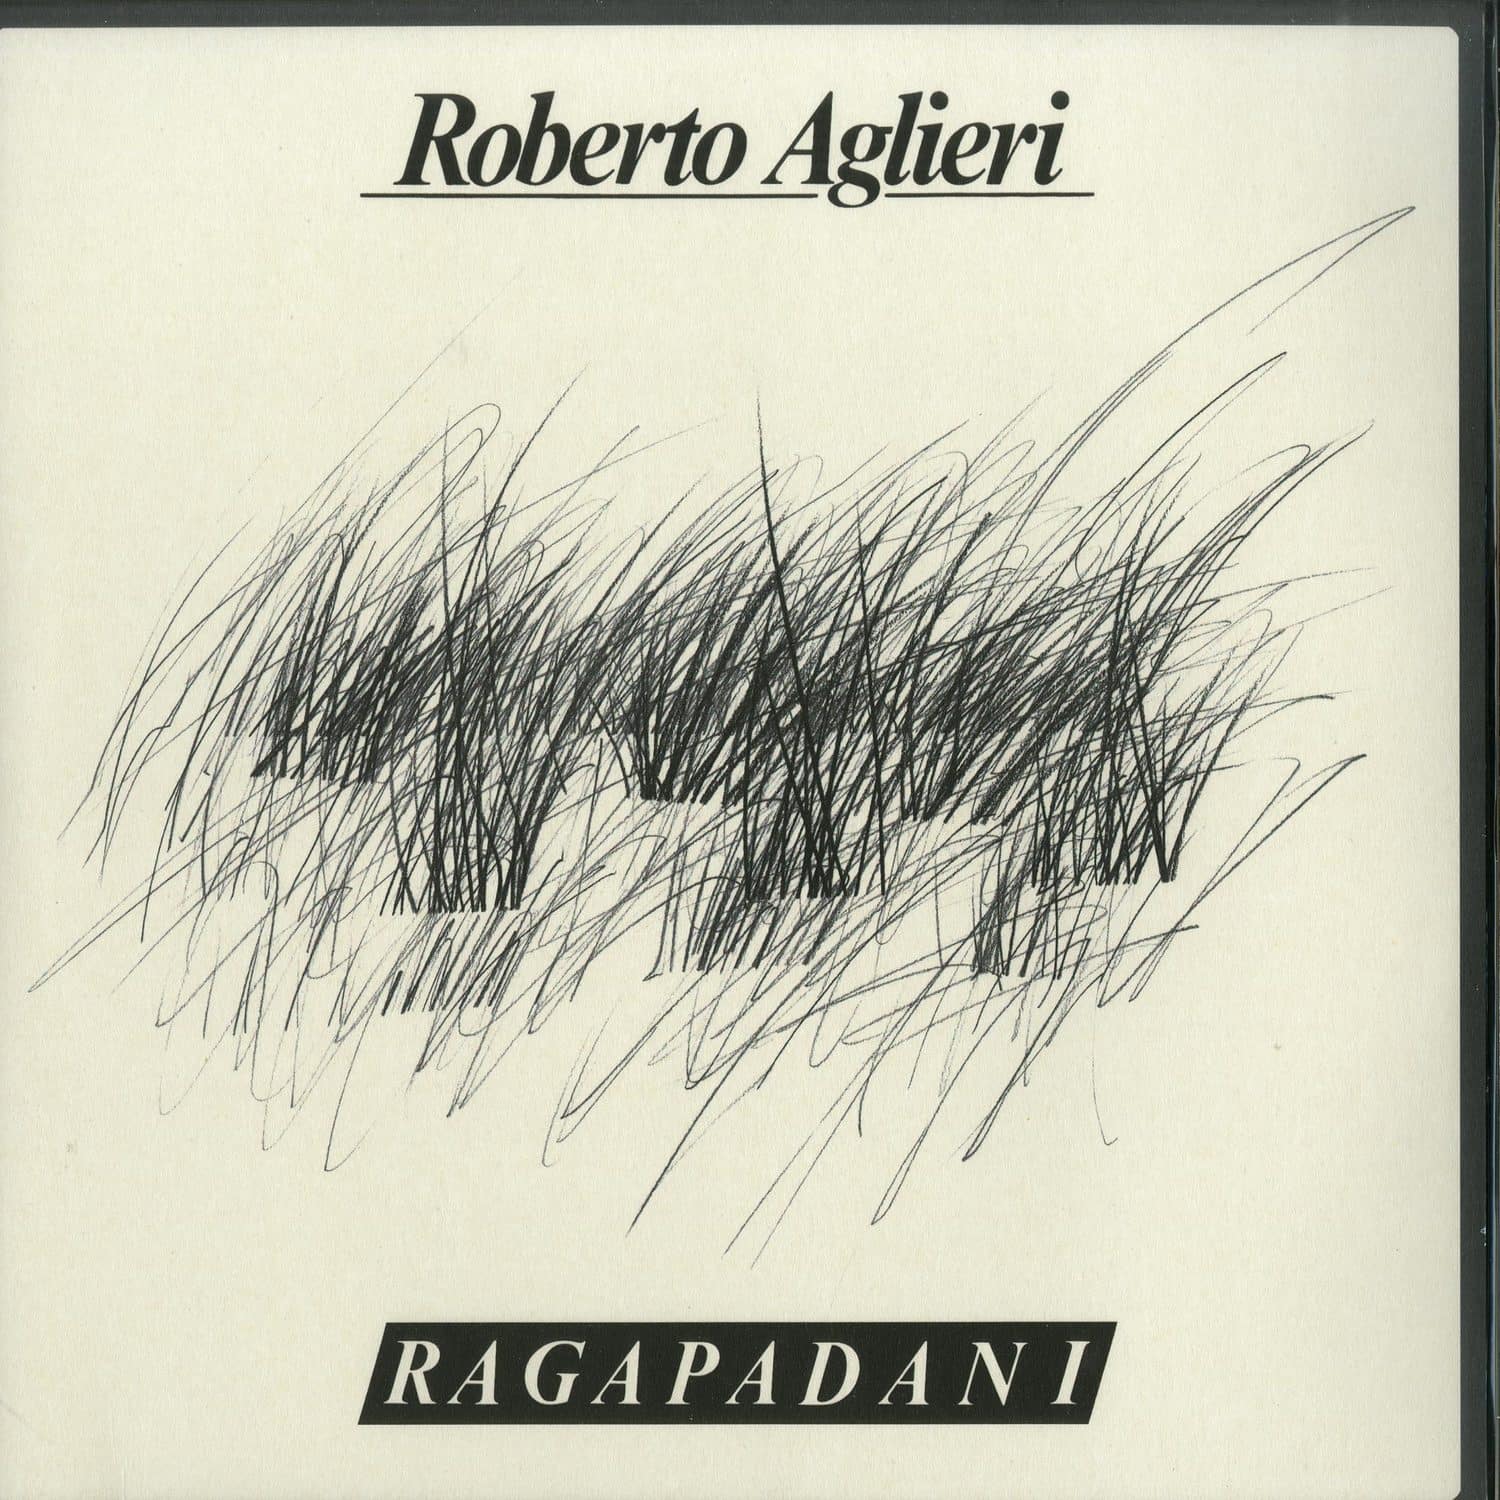 Roberto Aglieri - RAGAPADANI 